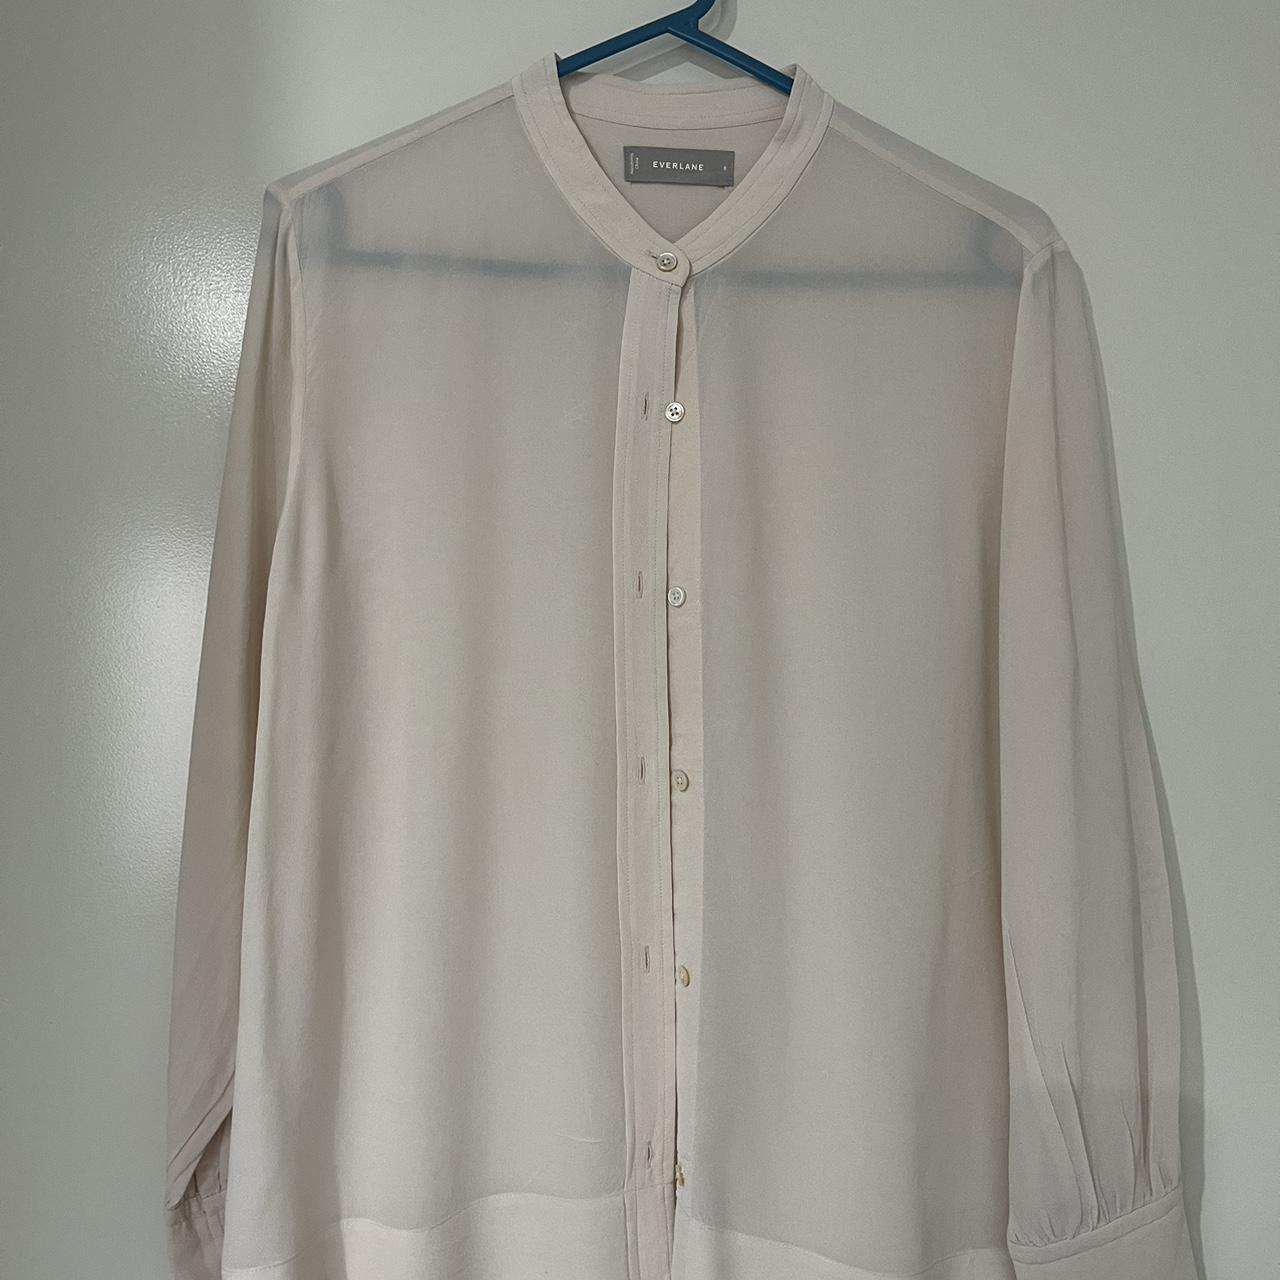 Everlane 100% silk shirt size 8. Colour is a very... - Depop